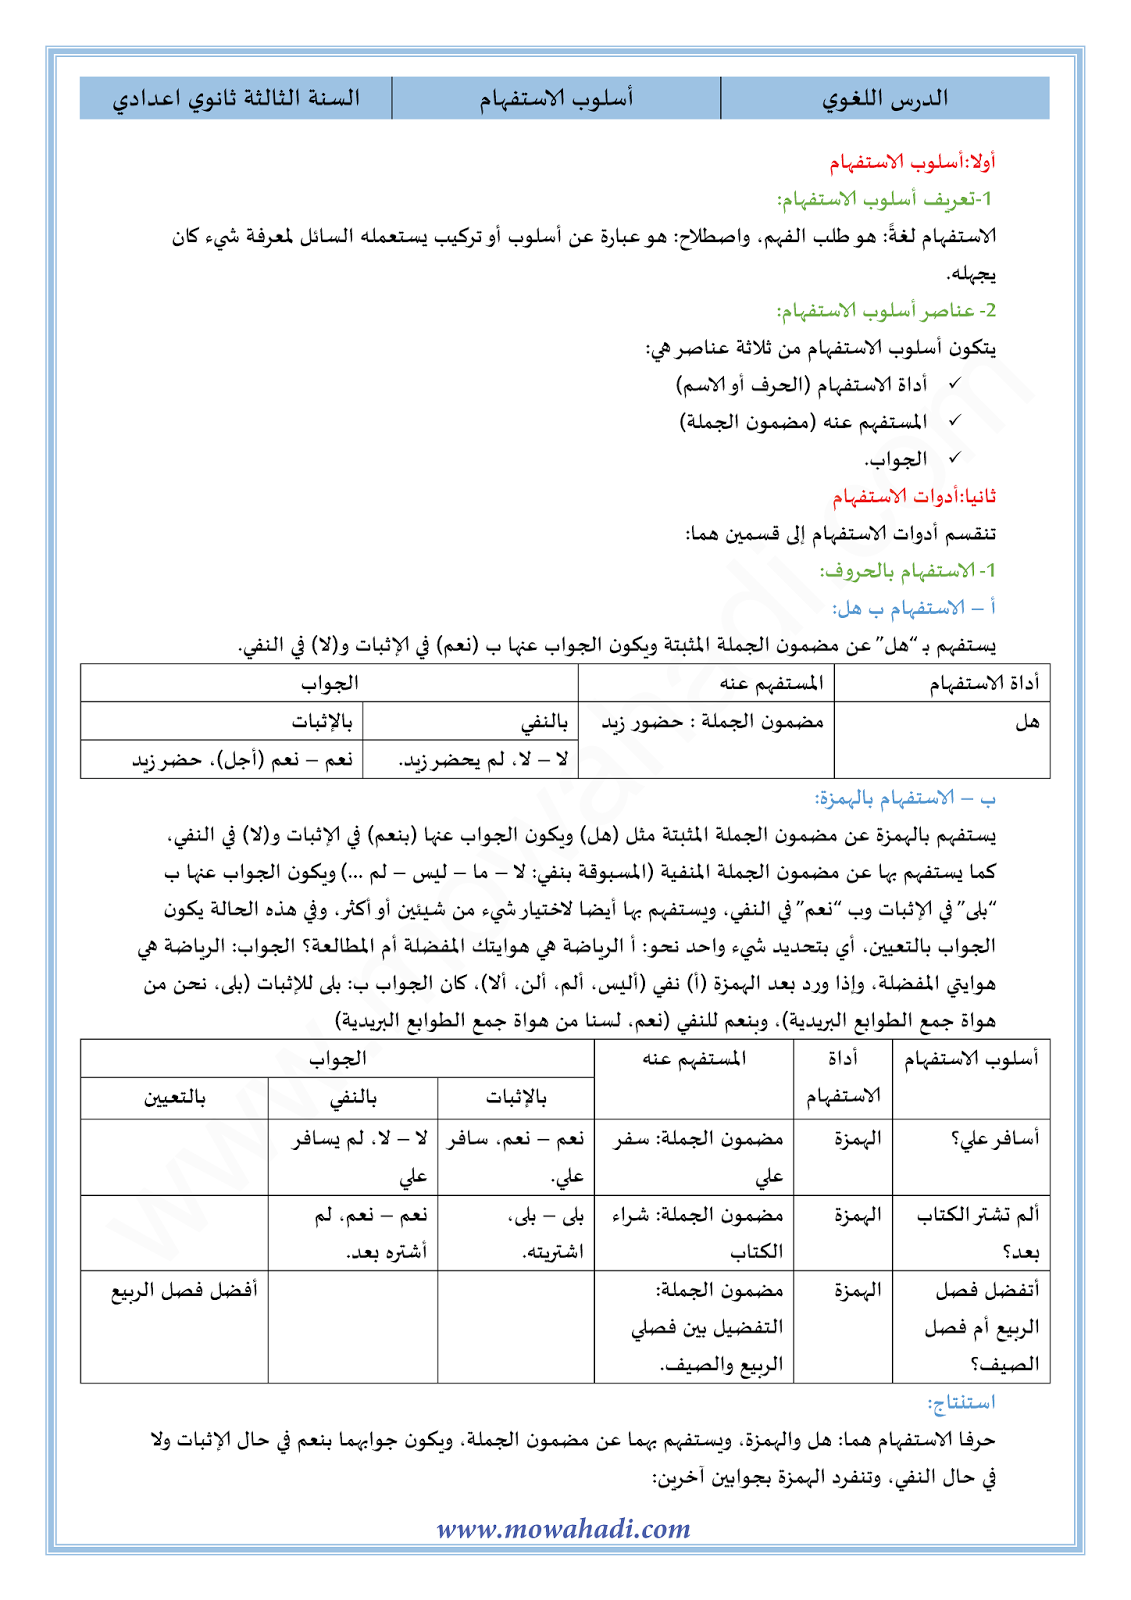 الدرس اللغوي أسلوب الاستفهام للسنة الثالثة اعدادي في مادة اللغة العربية 13-cours-dars-loghawi3_001